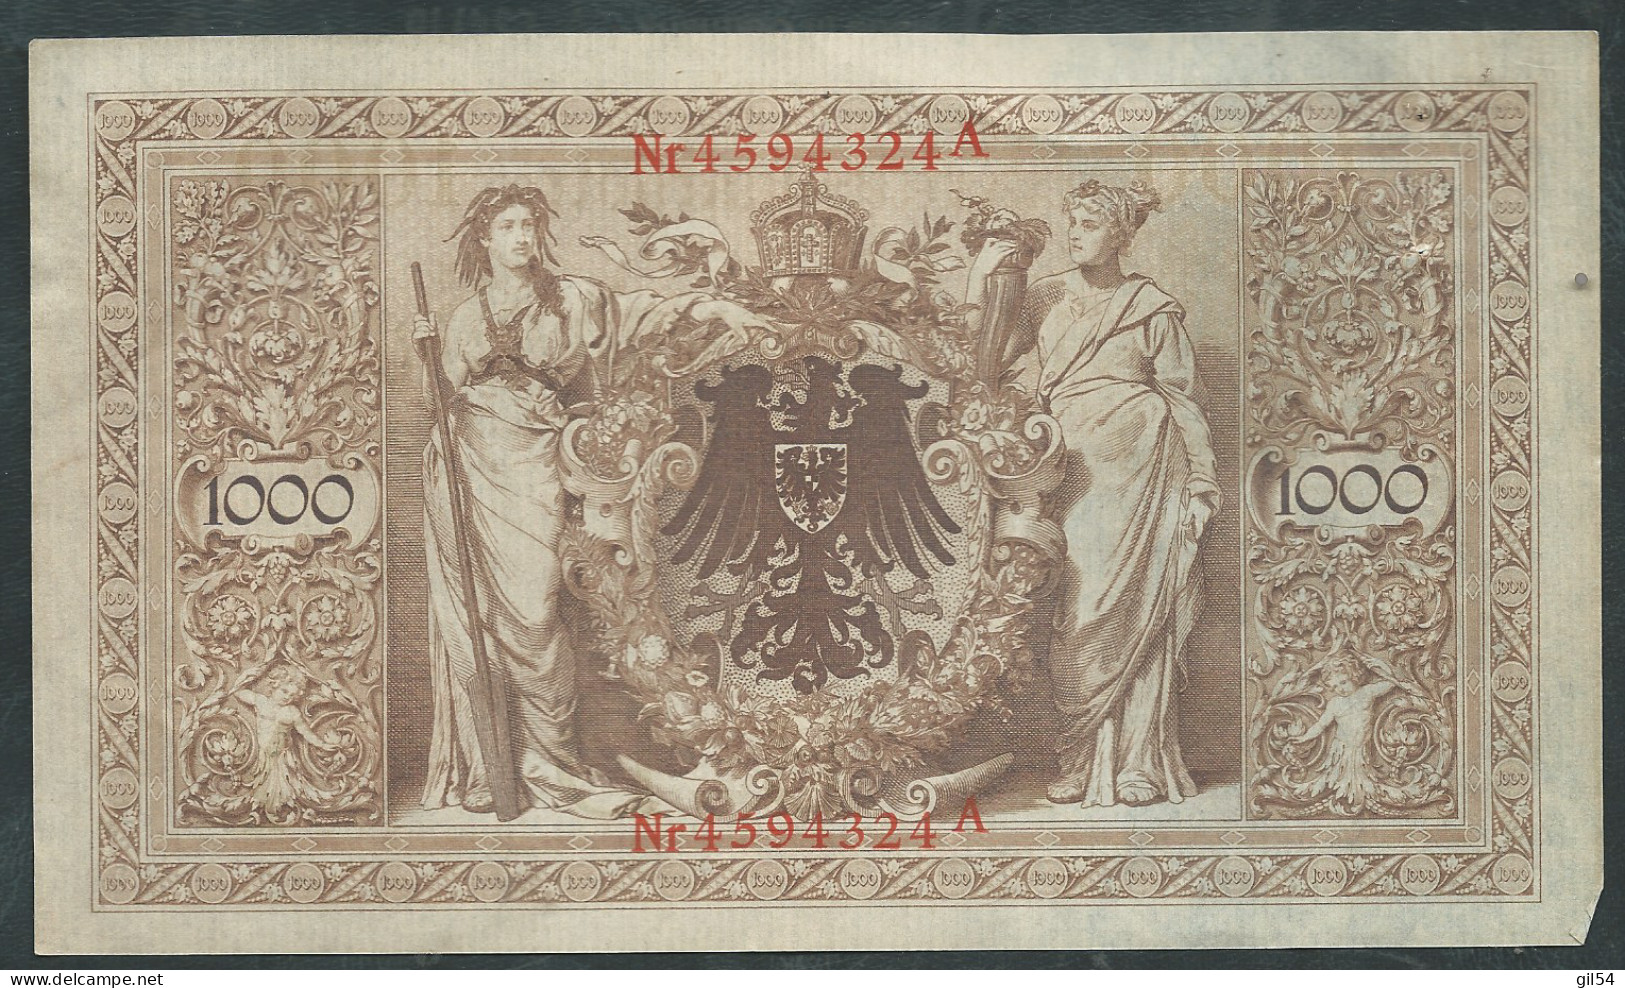 Allemagne - Billet De 1000 Mark - 21 Avril 1910 - Rouge Nr 4594324A - Laura 13010 - 1000 Mark